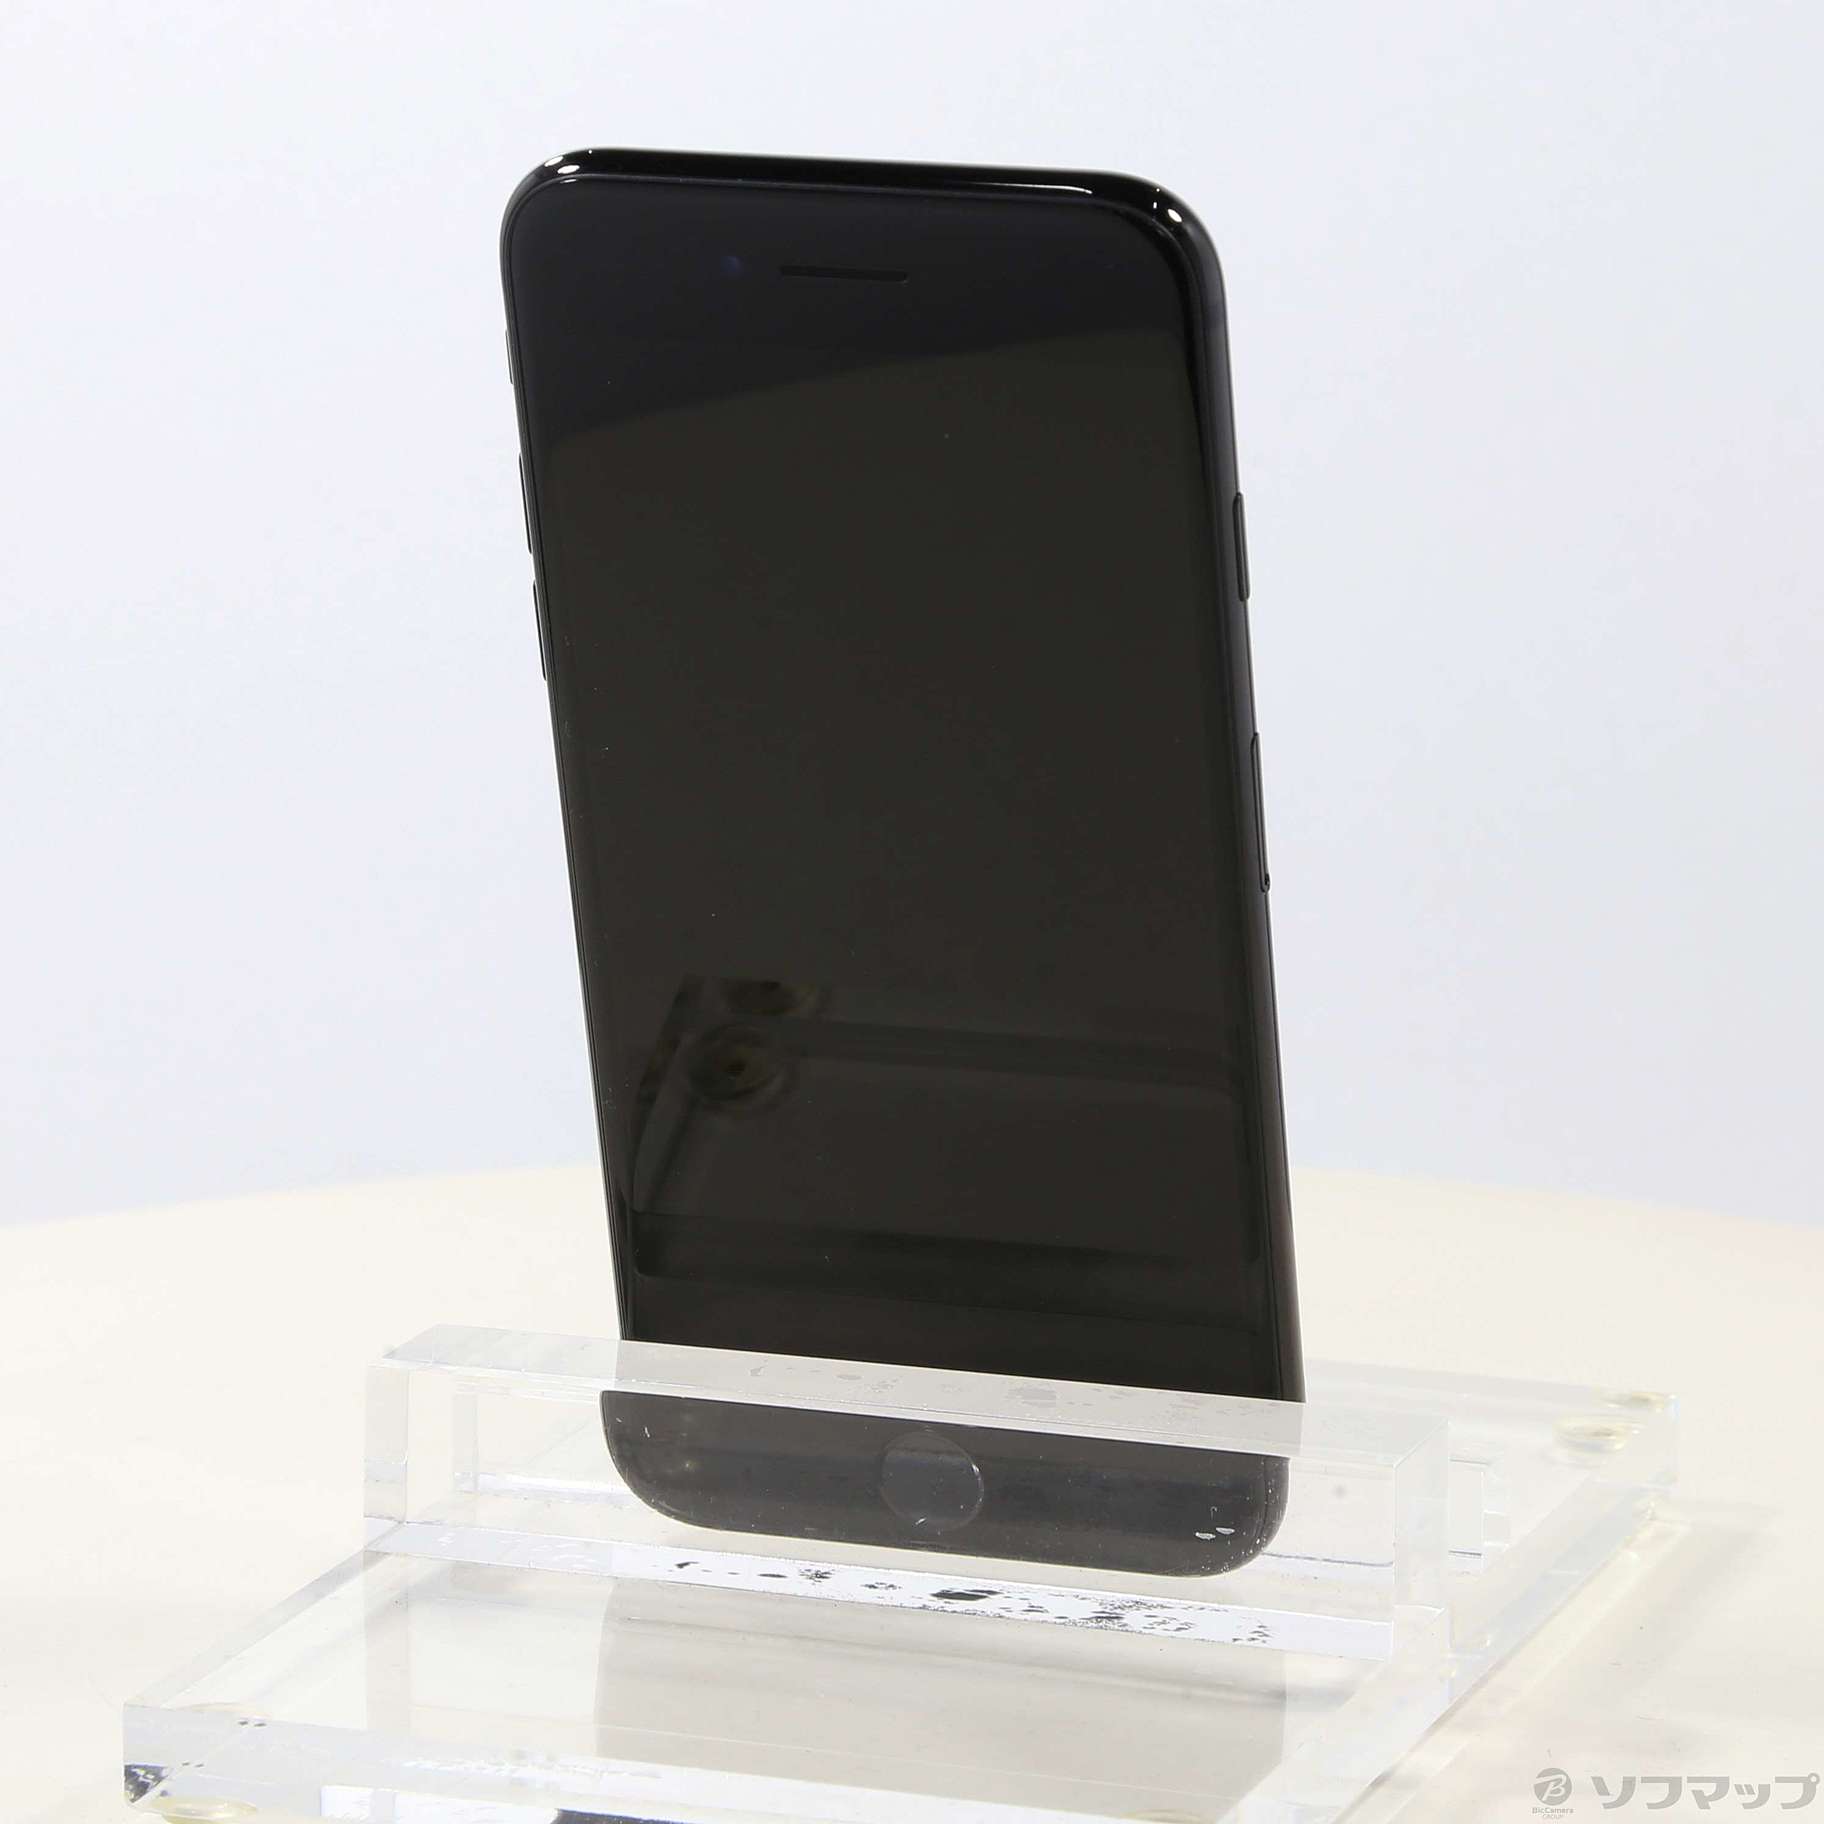 300【SIMフリー】Apple iPhone7 32GB ブラック